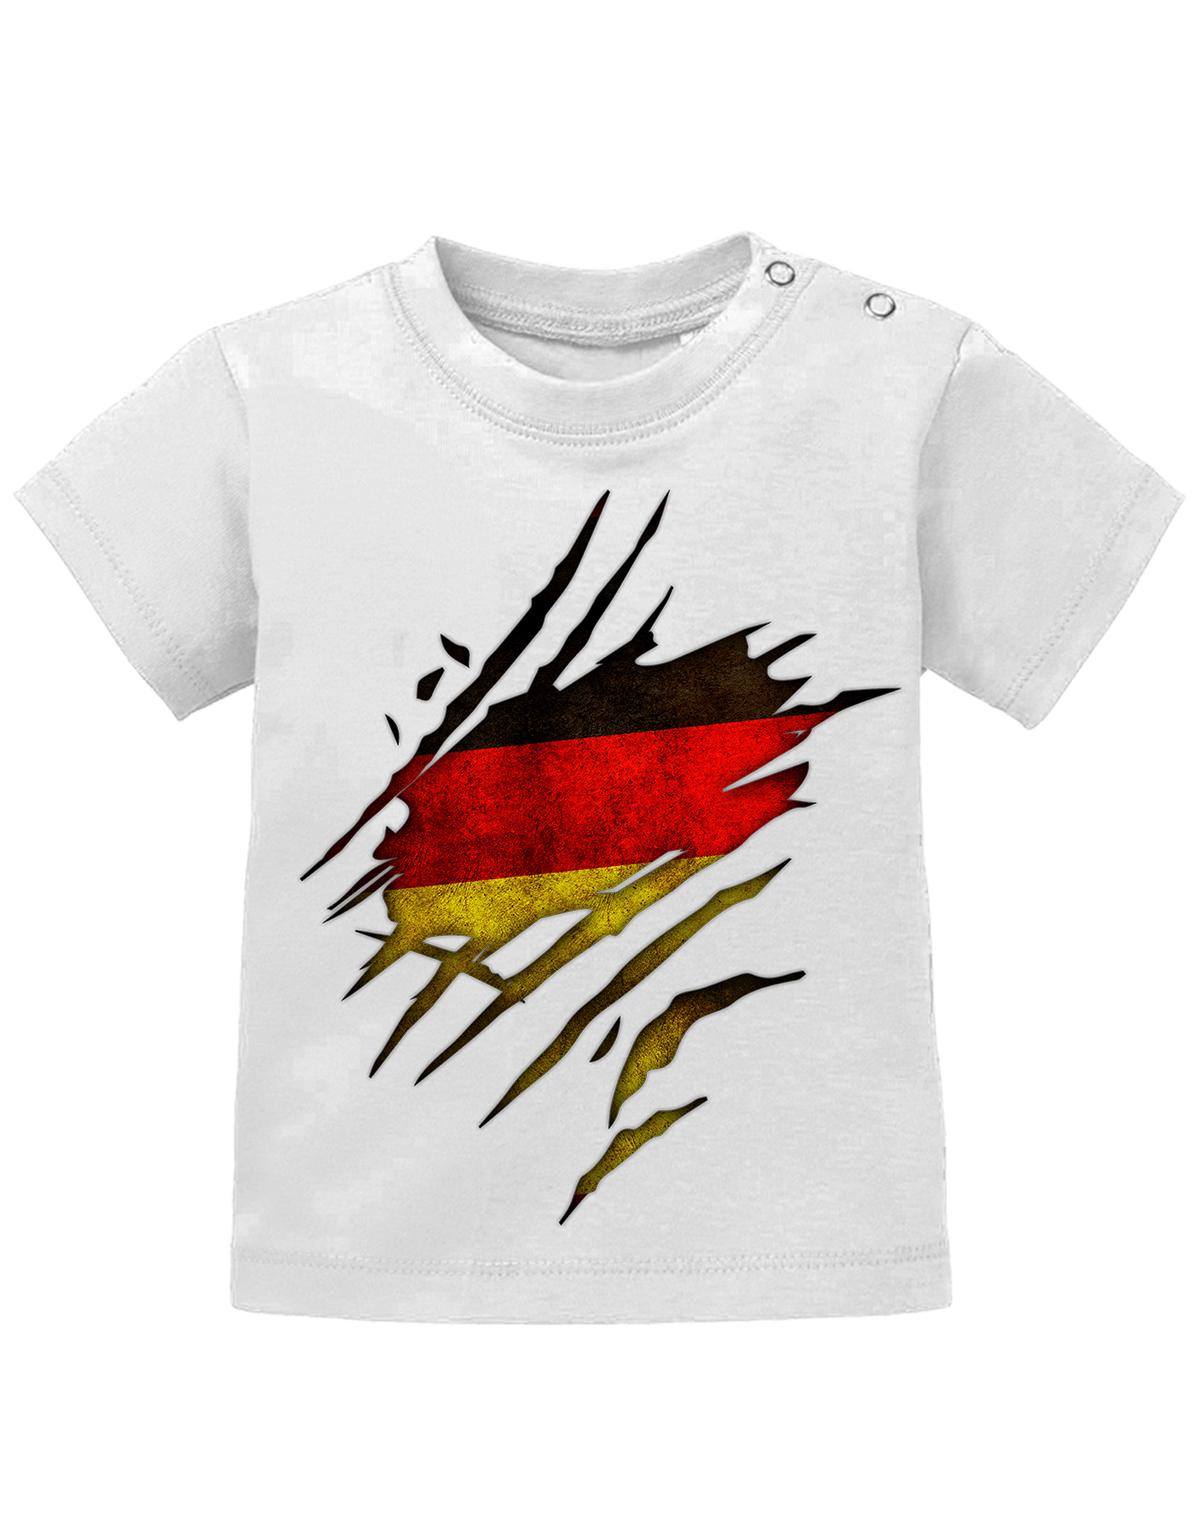 Deutschland T Shirt für Junge und Mädchen. Deutschland Flagge Design aufgerissen, damit man sieht, dass ein Deutscher im Shirt steckt.